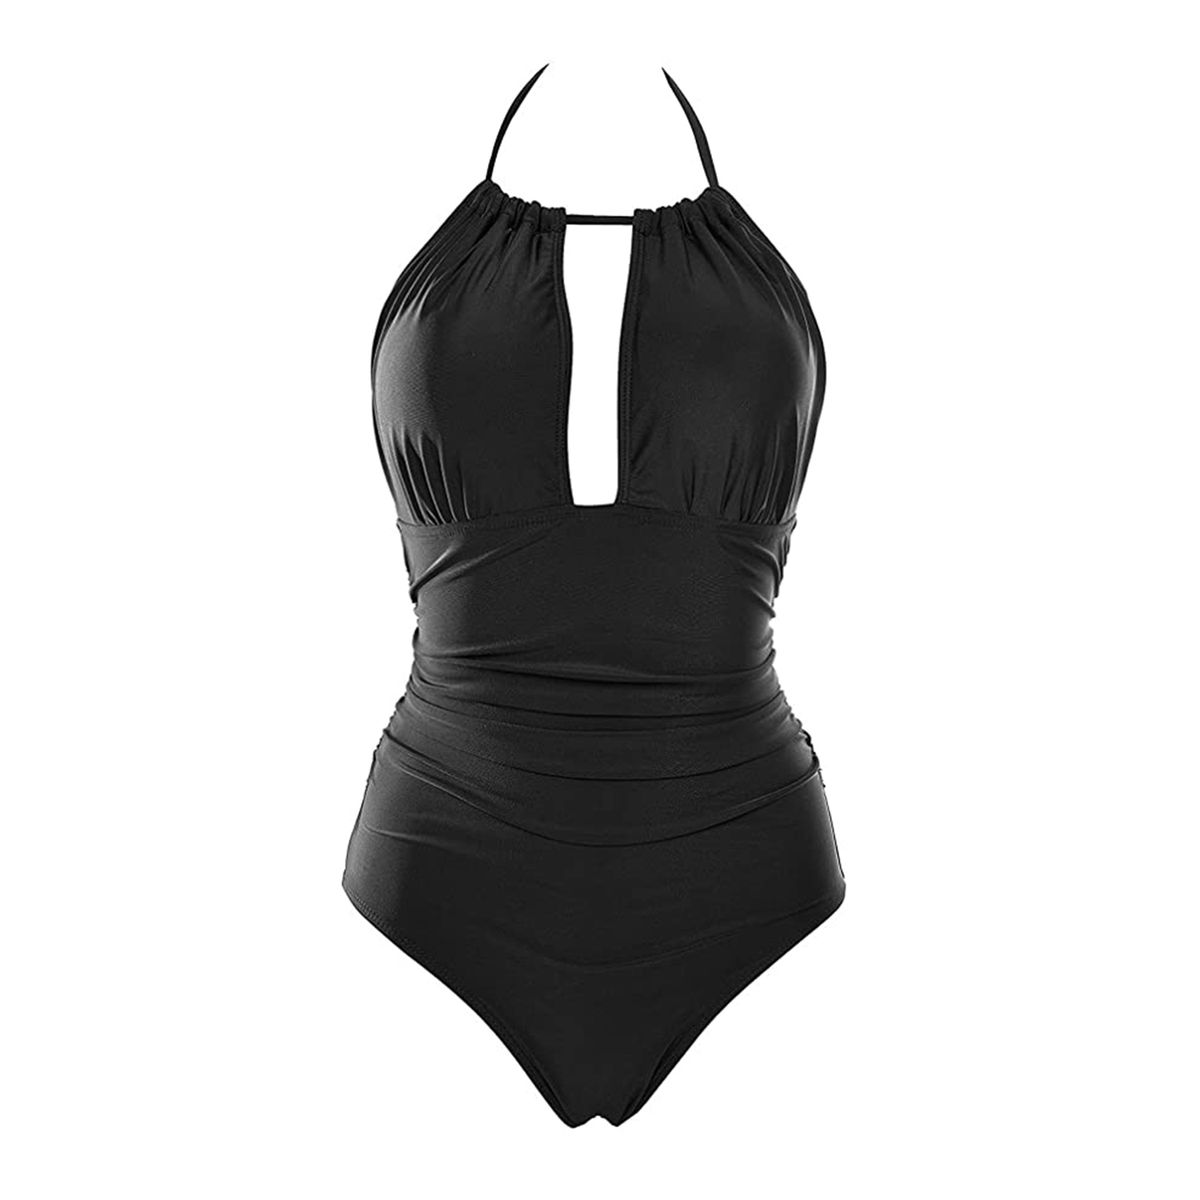 B2prity Women's One Piece Swimsuit in Black